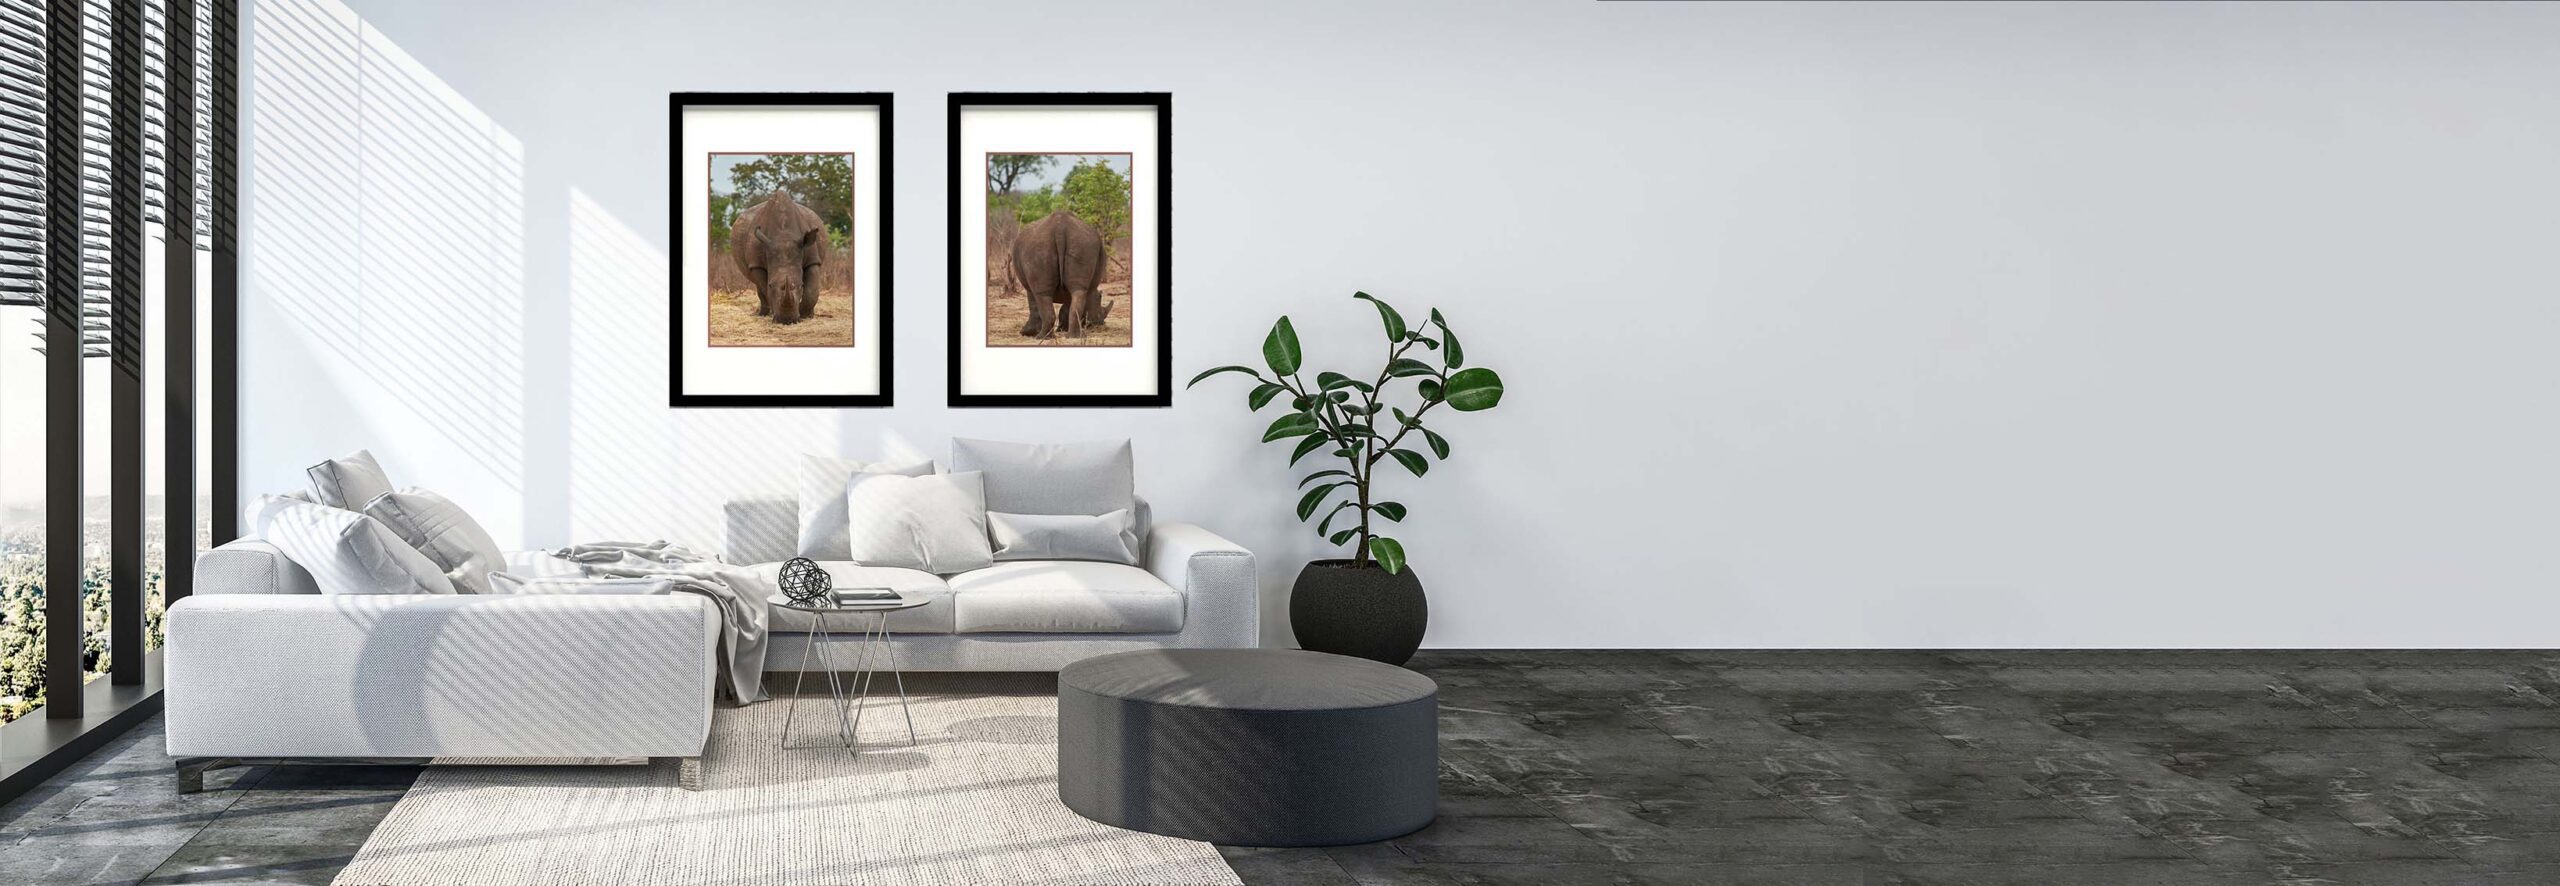 Una sala color blanca con dos cuadros con rinocerontes